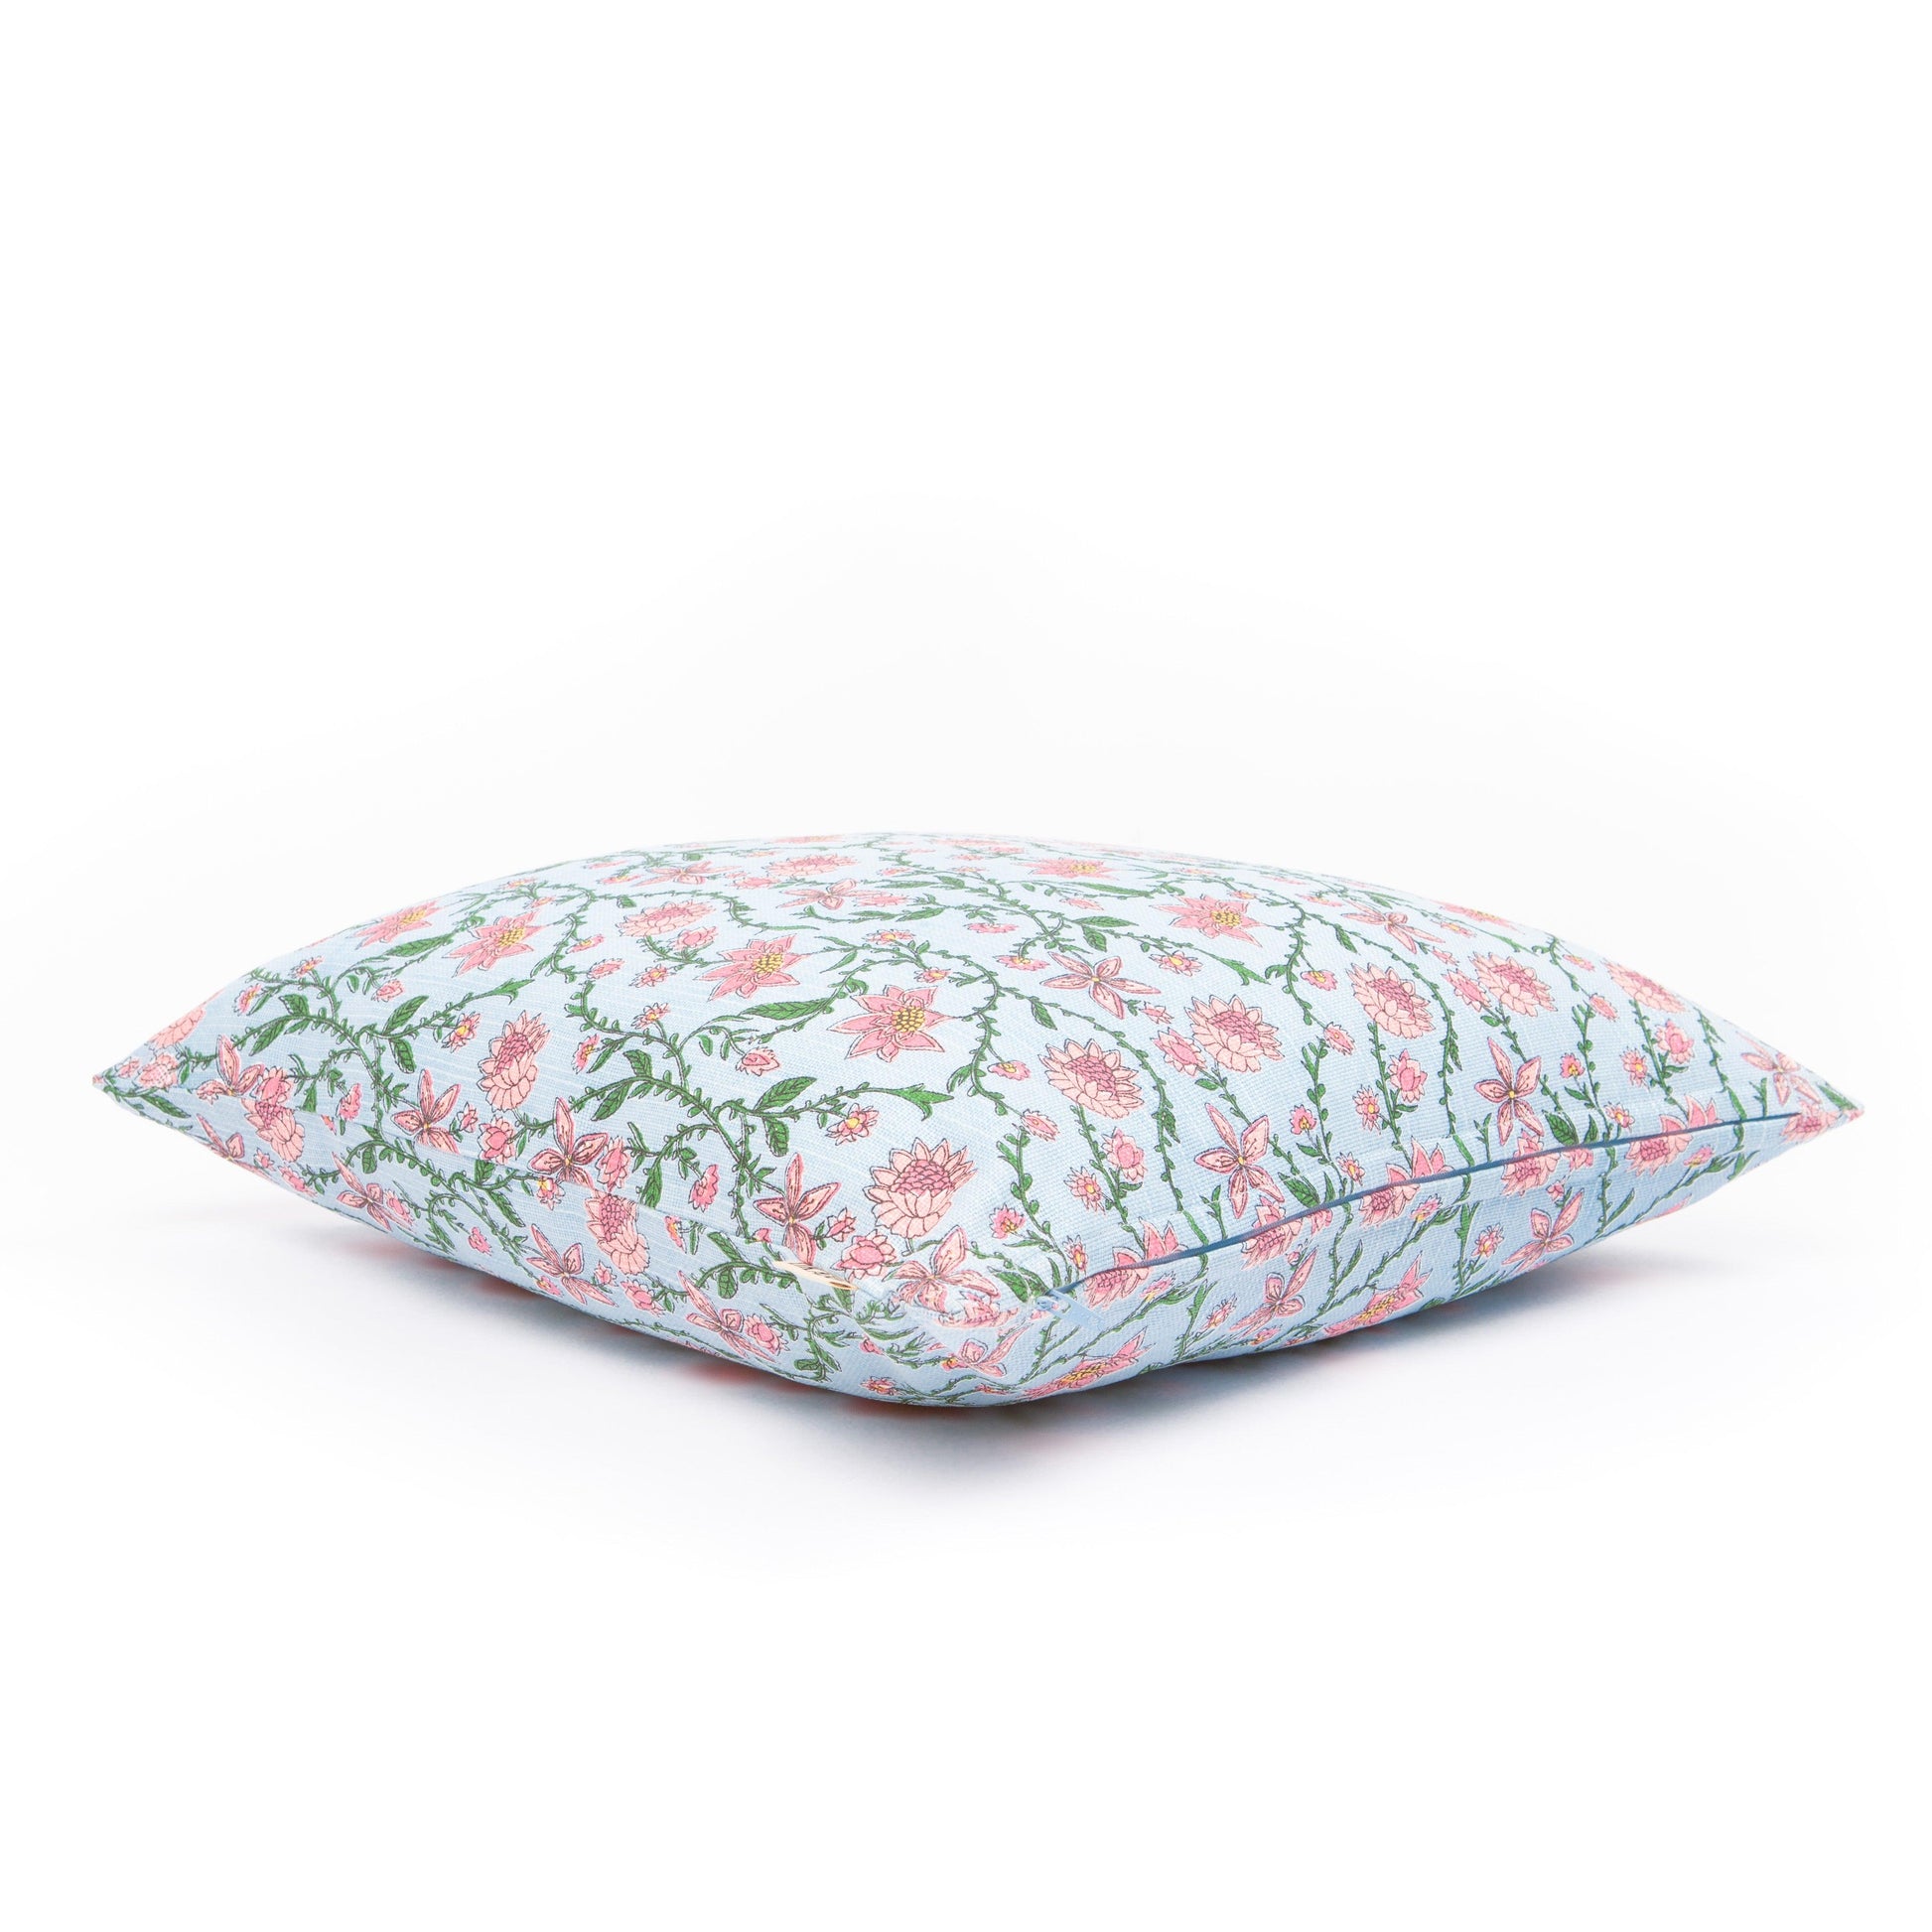 Bahar Floral Cushion Cover - Tikauo